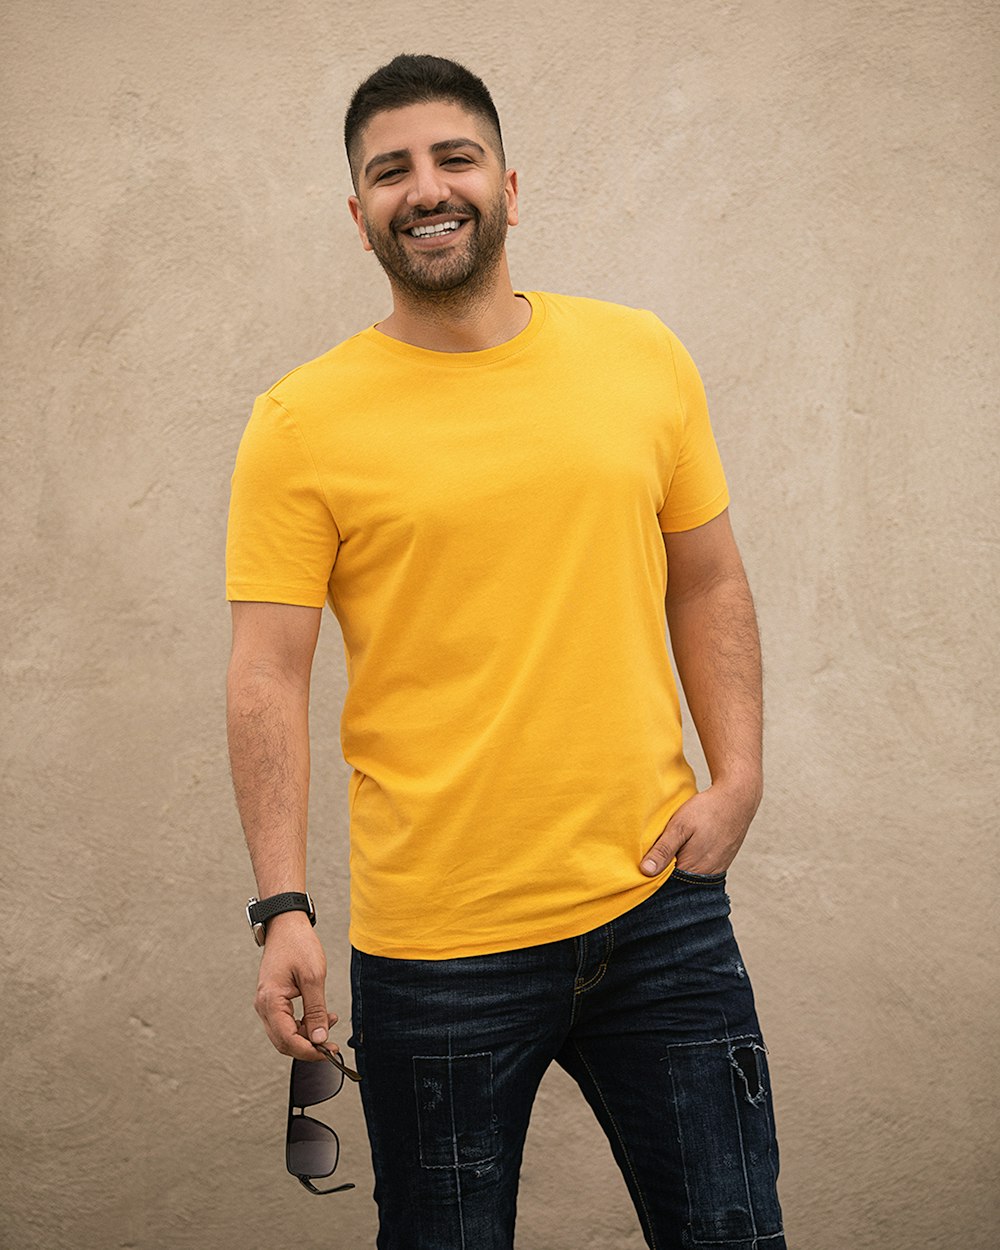 Mann in gelbem Rundhals-T-Shirt und schwarzer Jeans neben weißer Wand